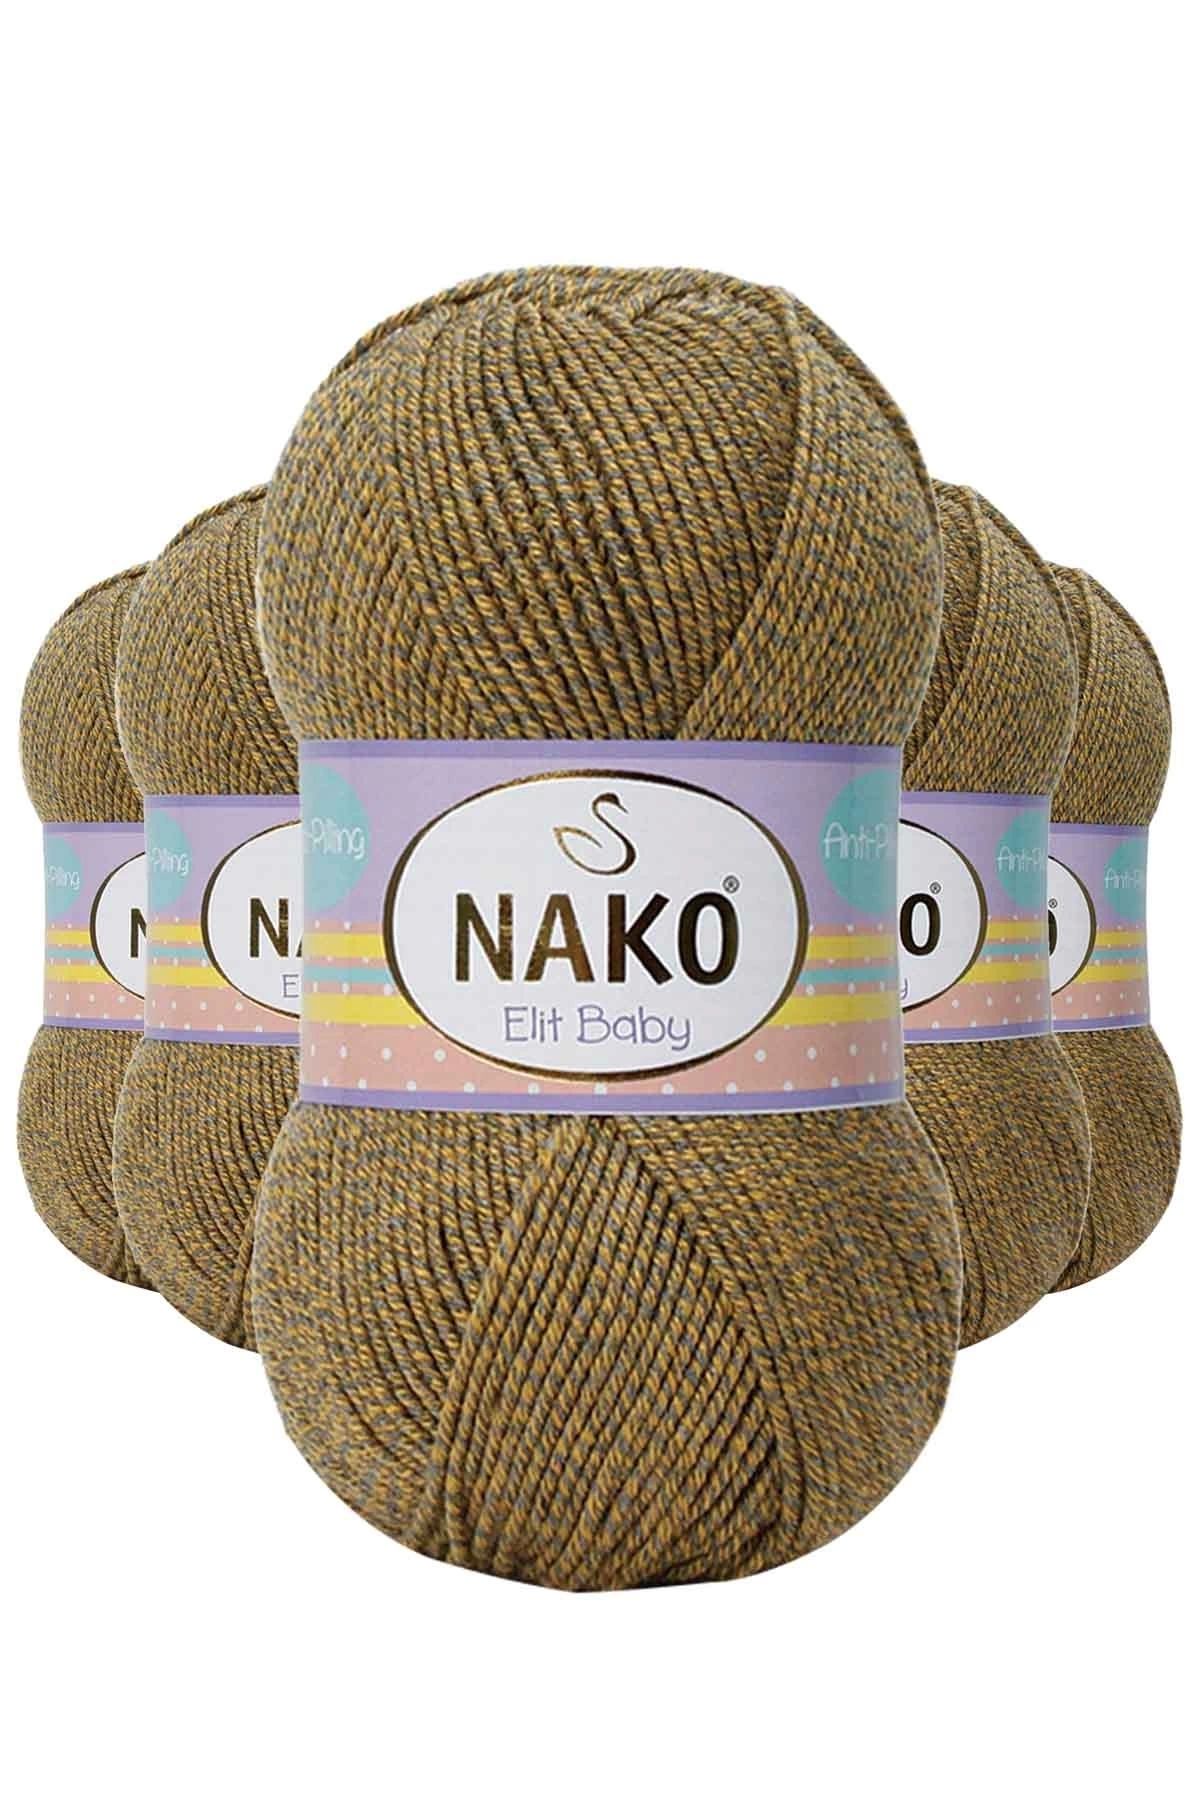 Nako 5 Adet Elite Baby El Örgü Ipi Tüylenmeyen Bebek Yünü Sarı Gri 21354